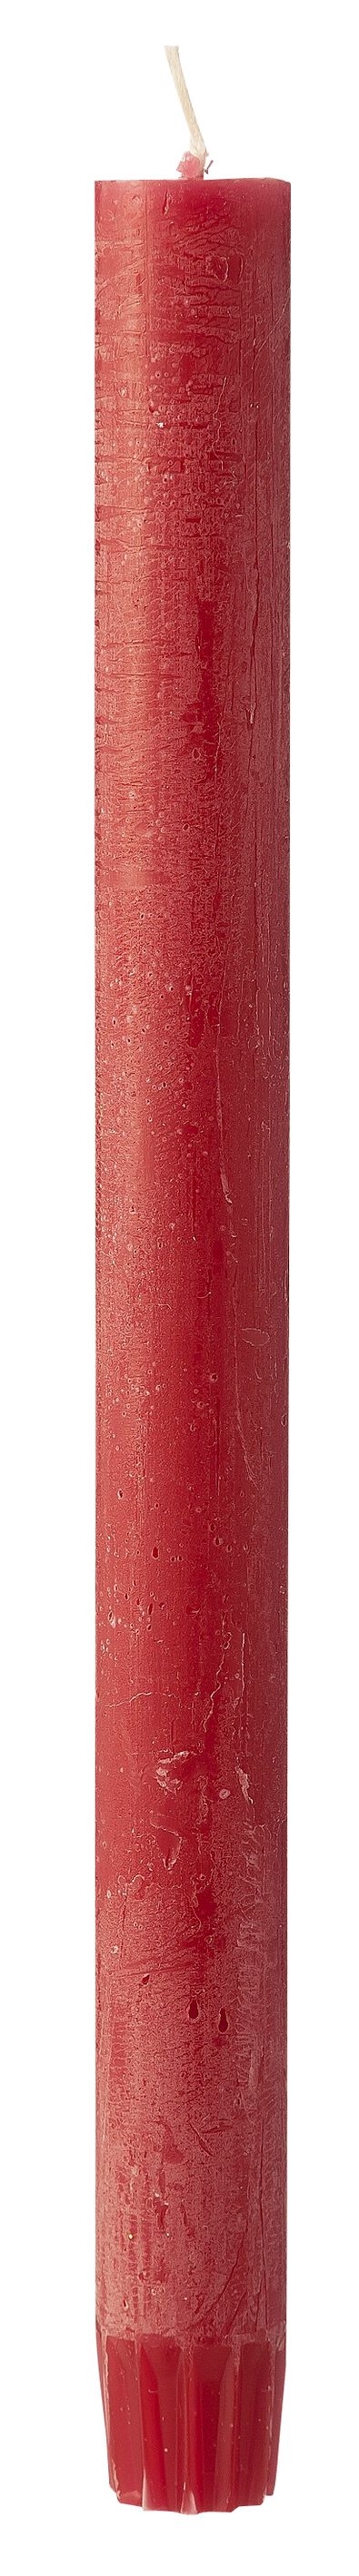 bougie rustique 2.2 x 27 cm rouge foncé 2.2 x 27 - 13503294 - HEMA